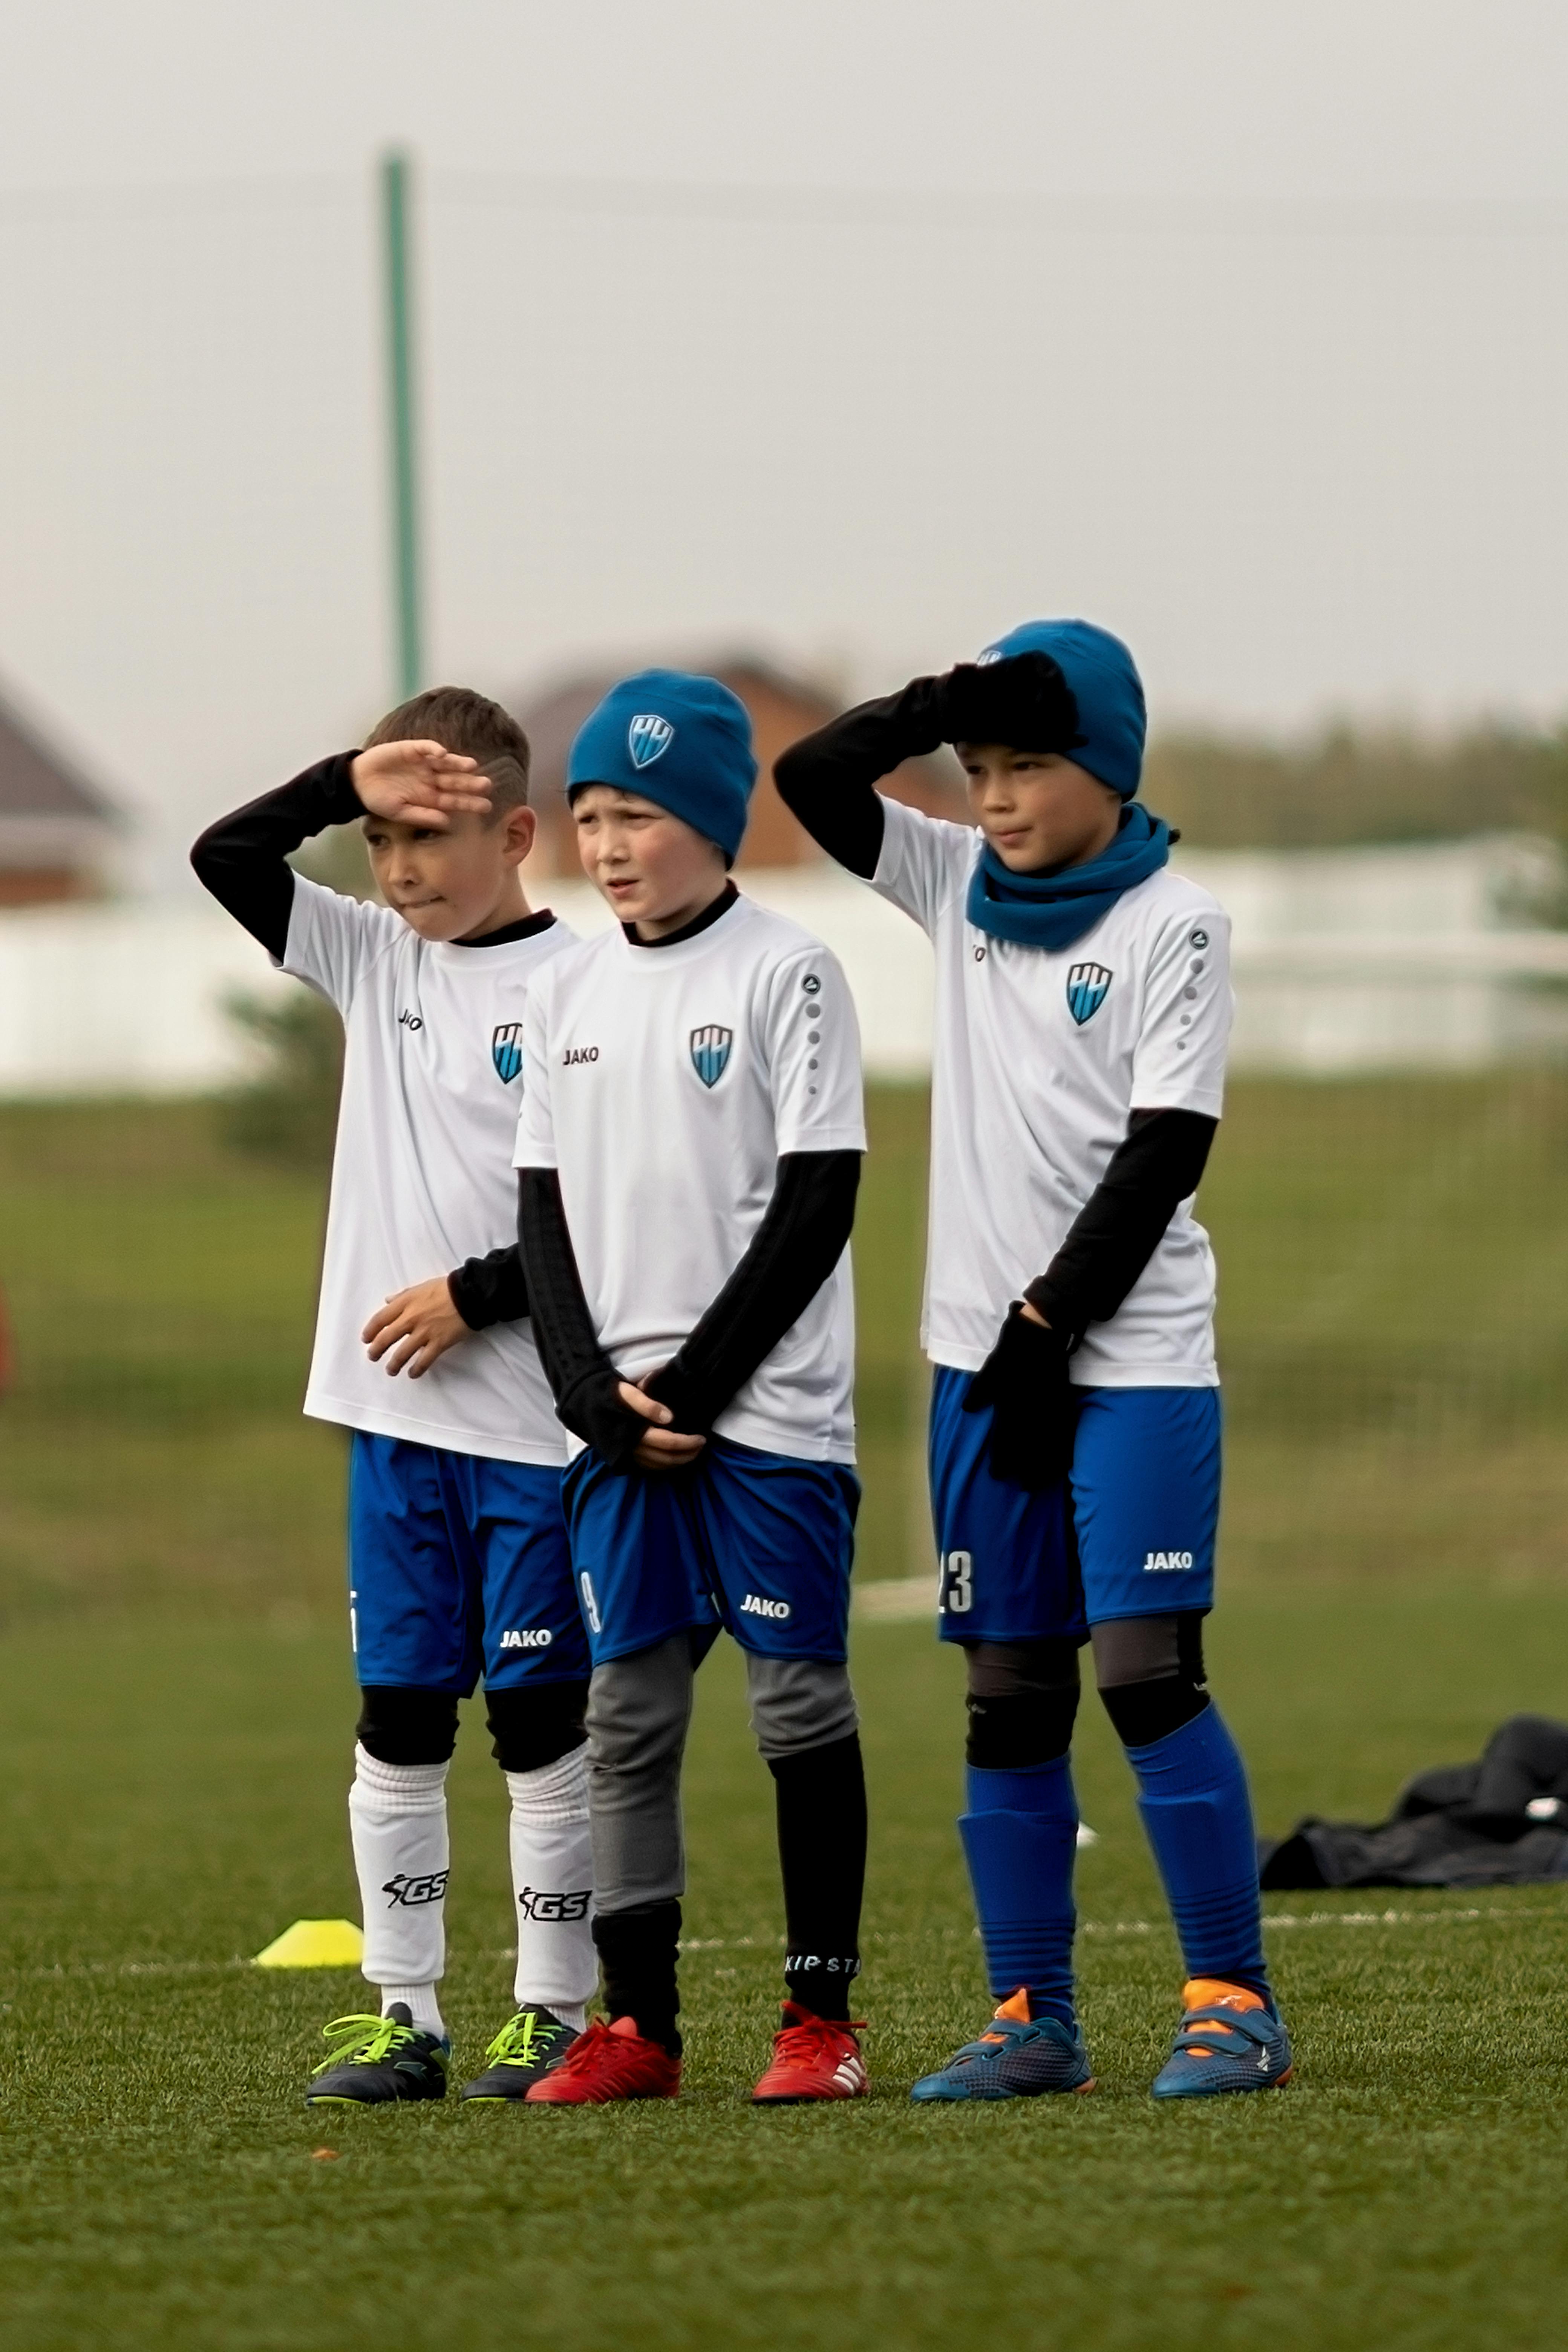 boys wearing their football uniform